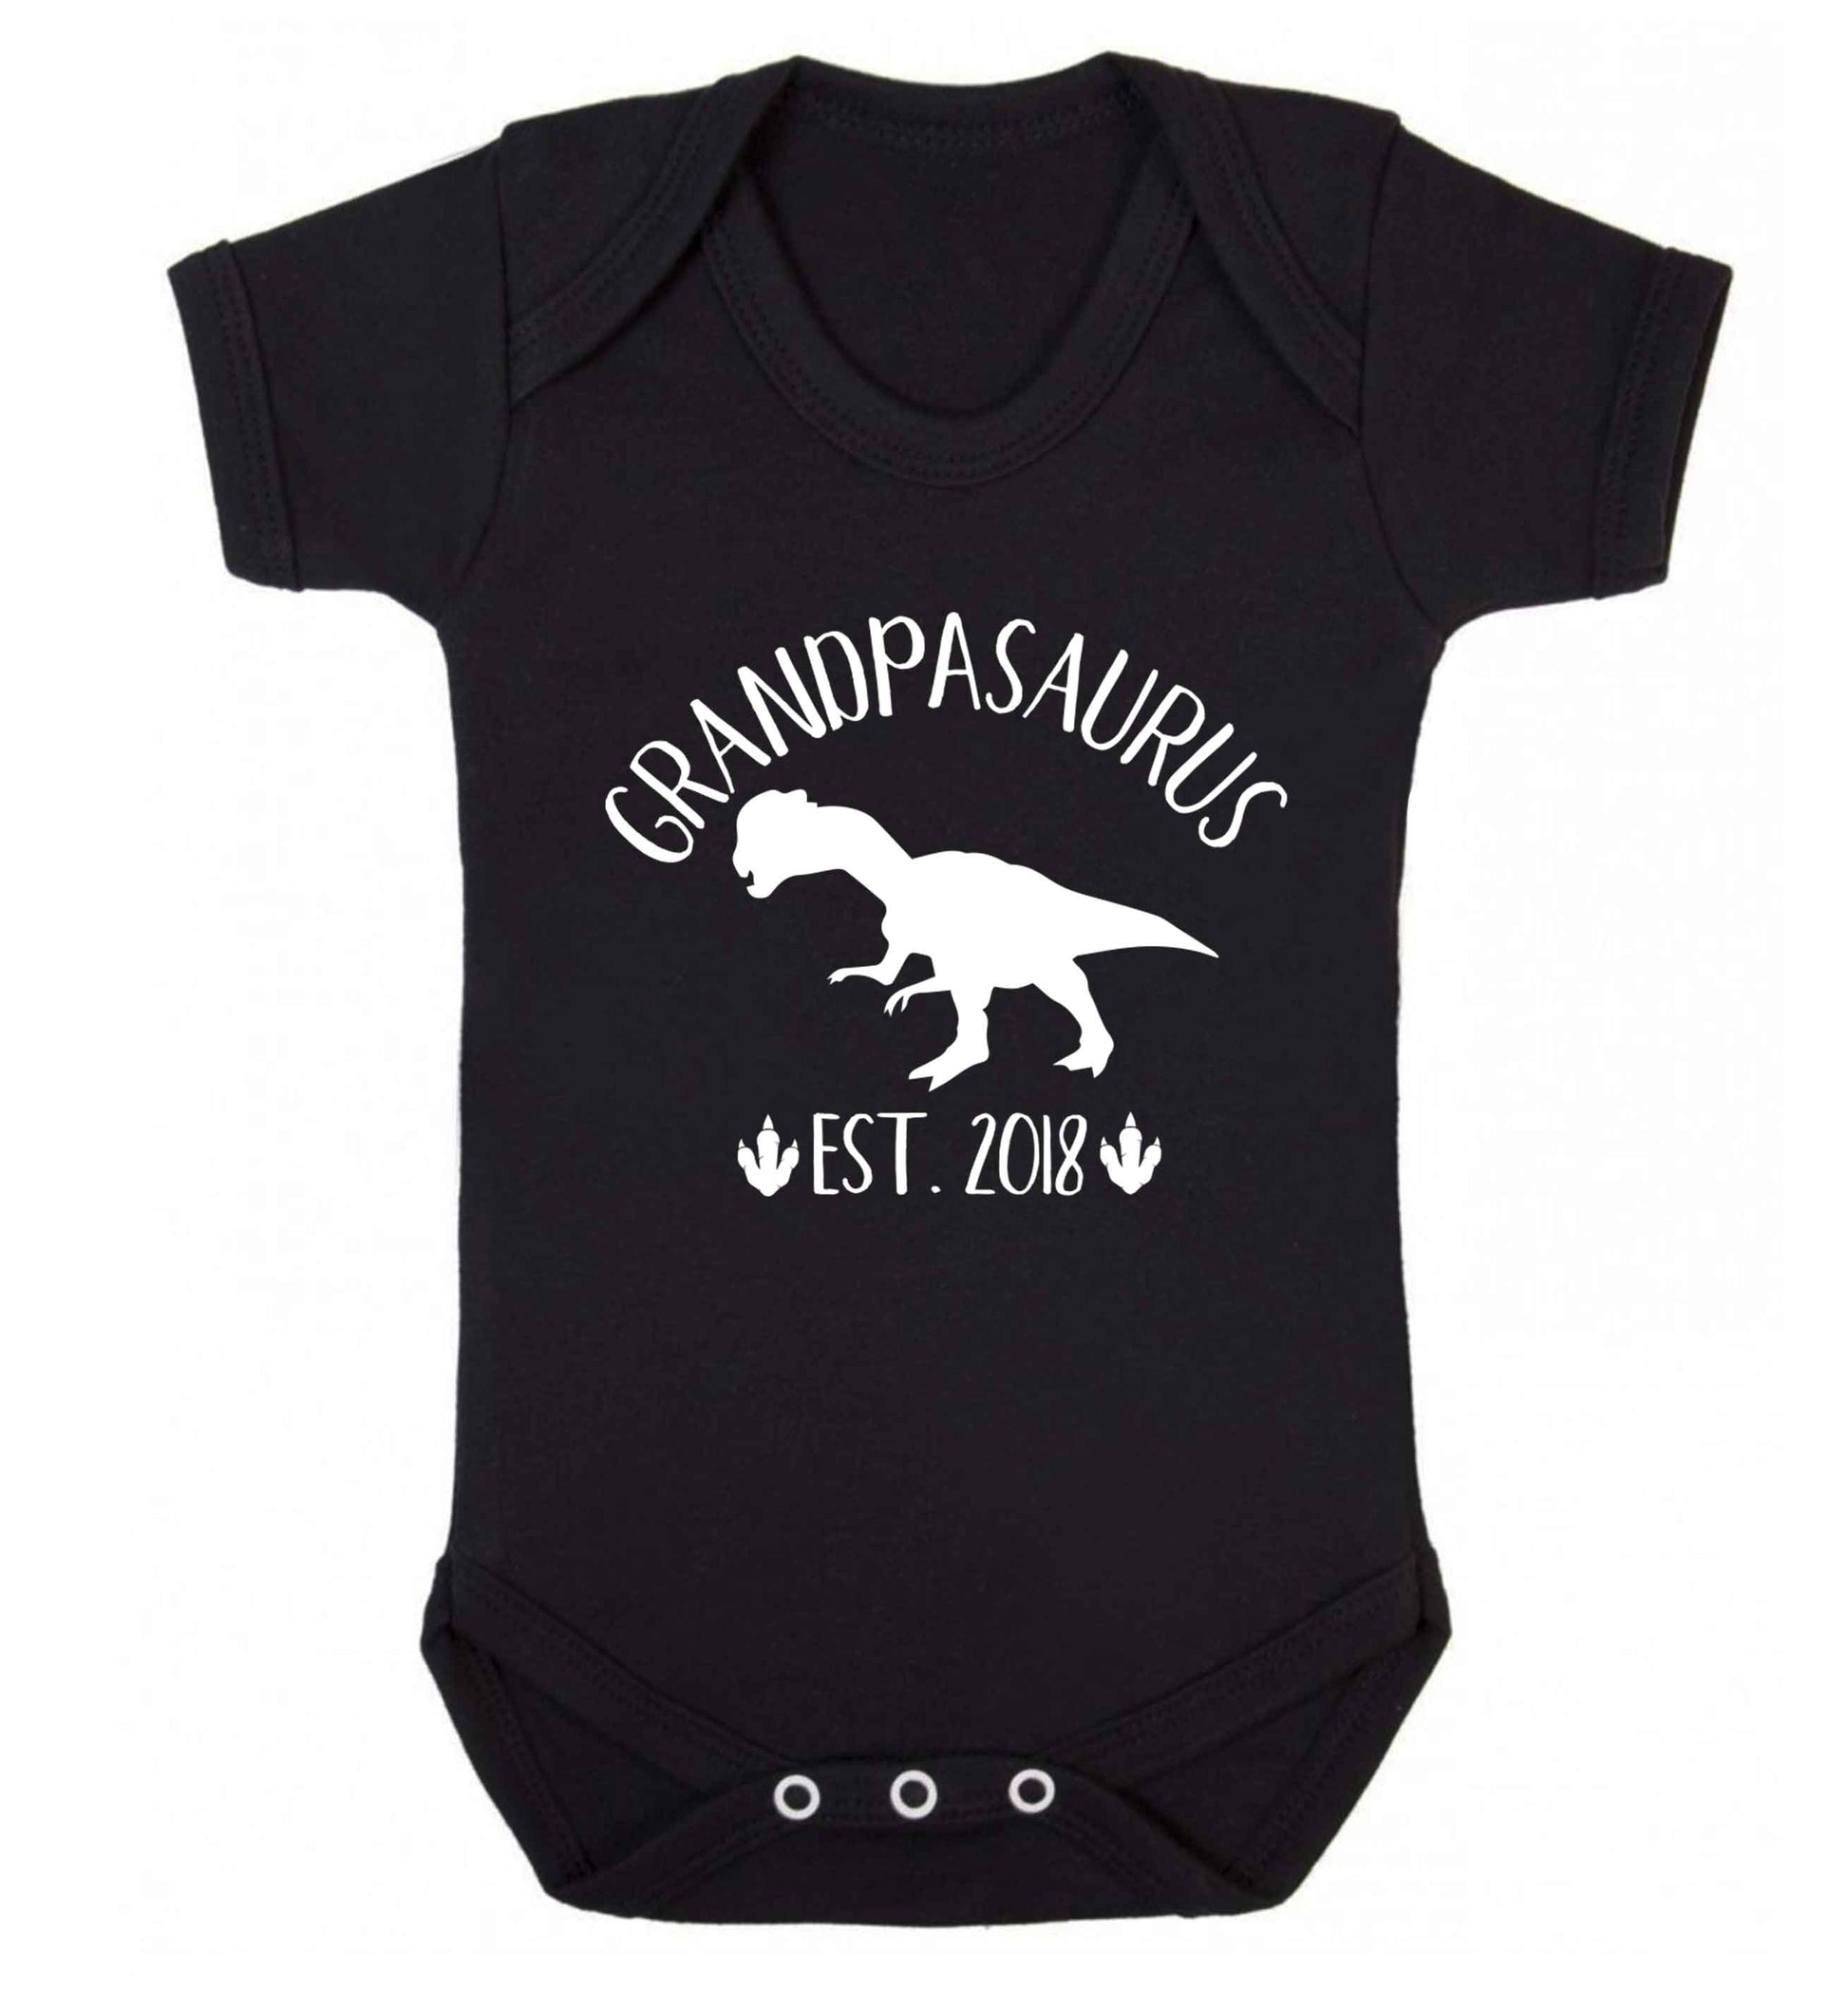 Personalised grandpasaurus since (custom date) Baby Vest black 18-24 months